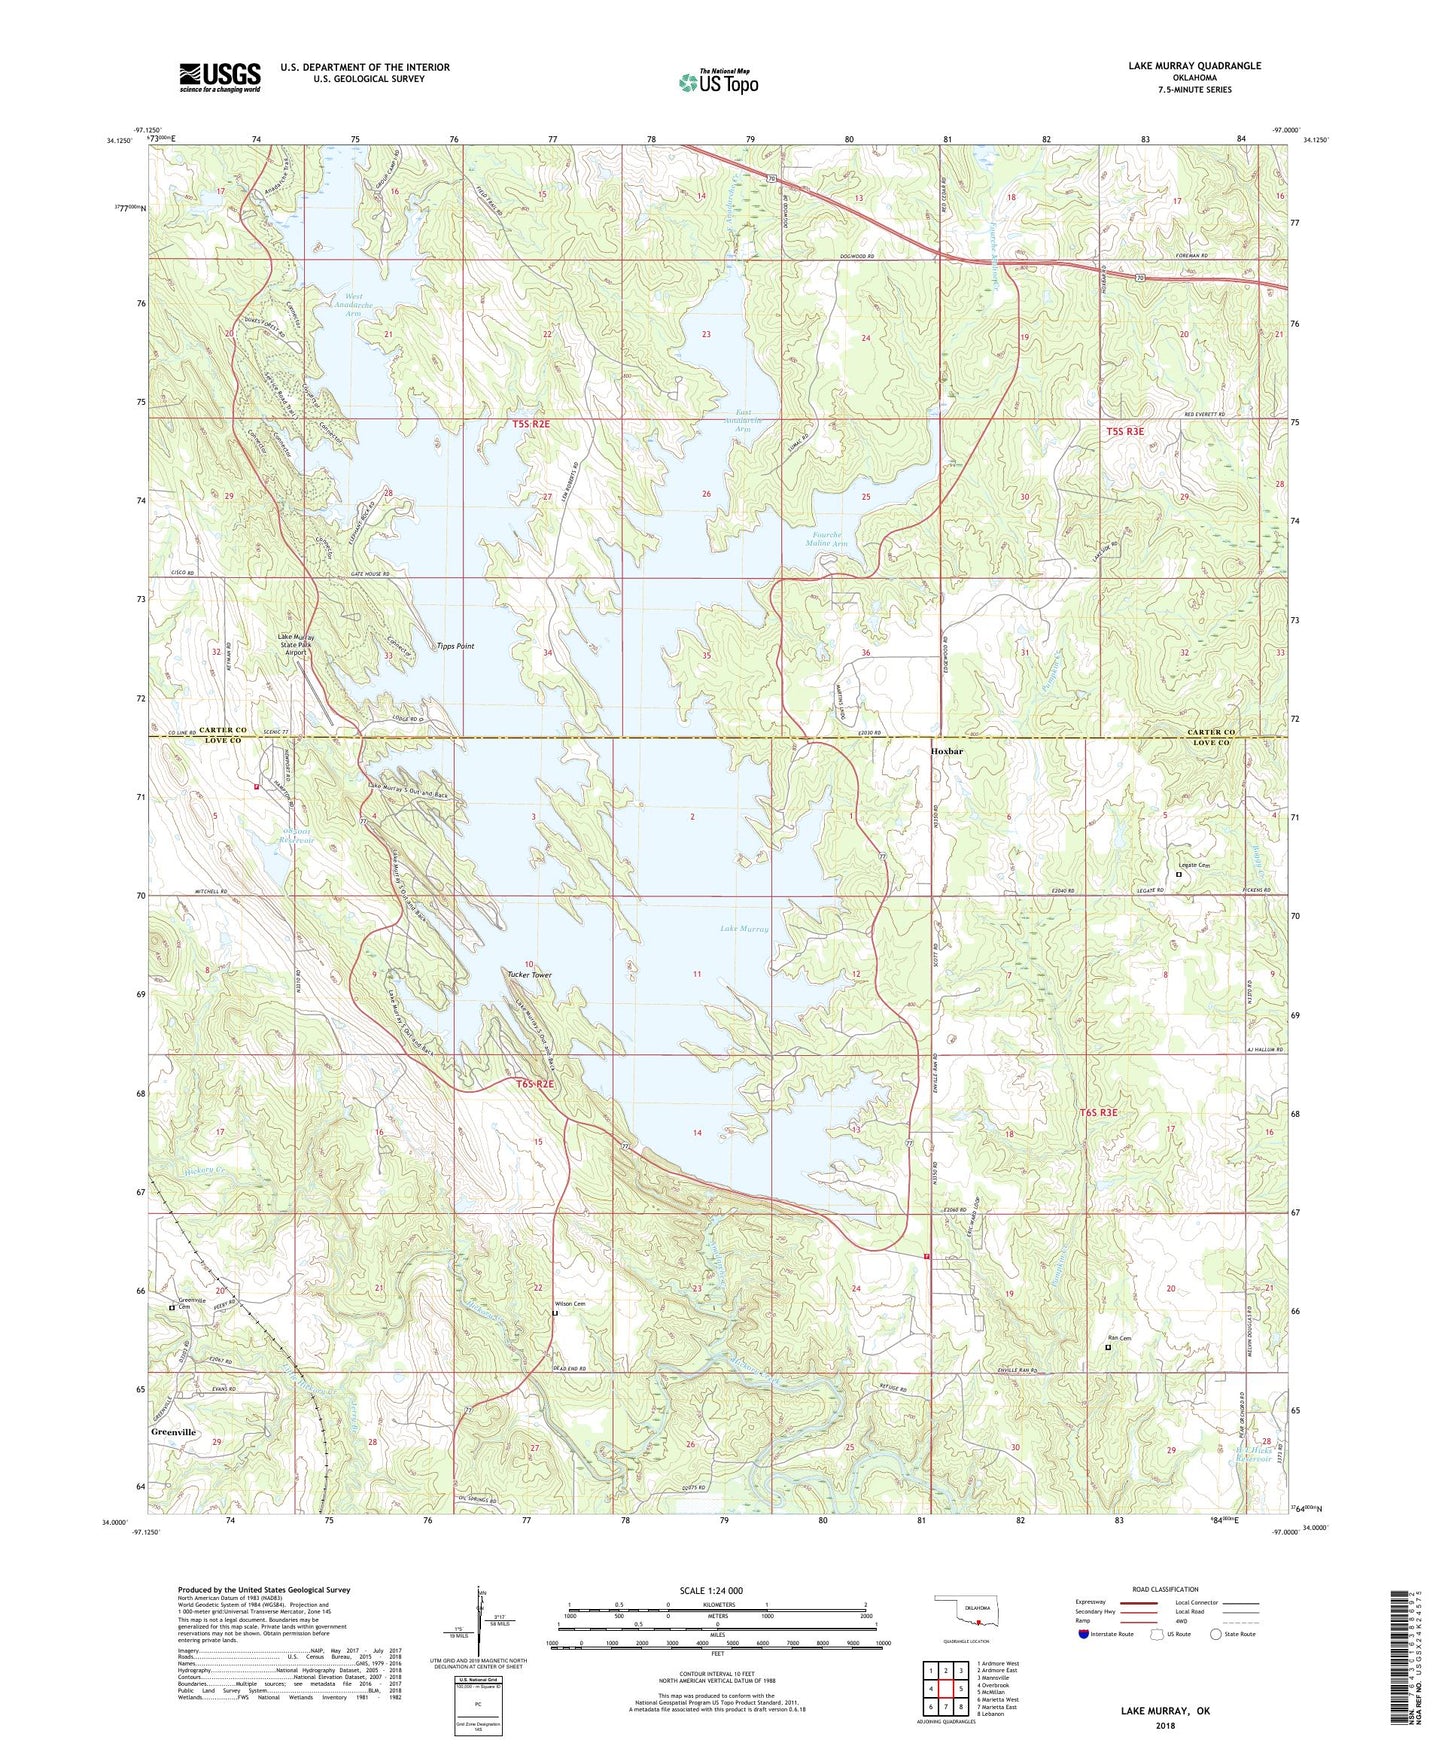 Lake Murray Oklahoma US Topo Map Image